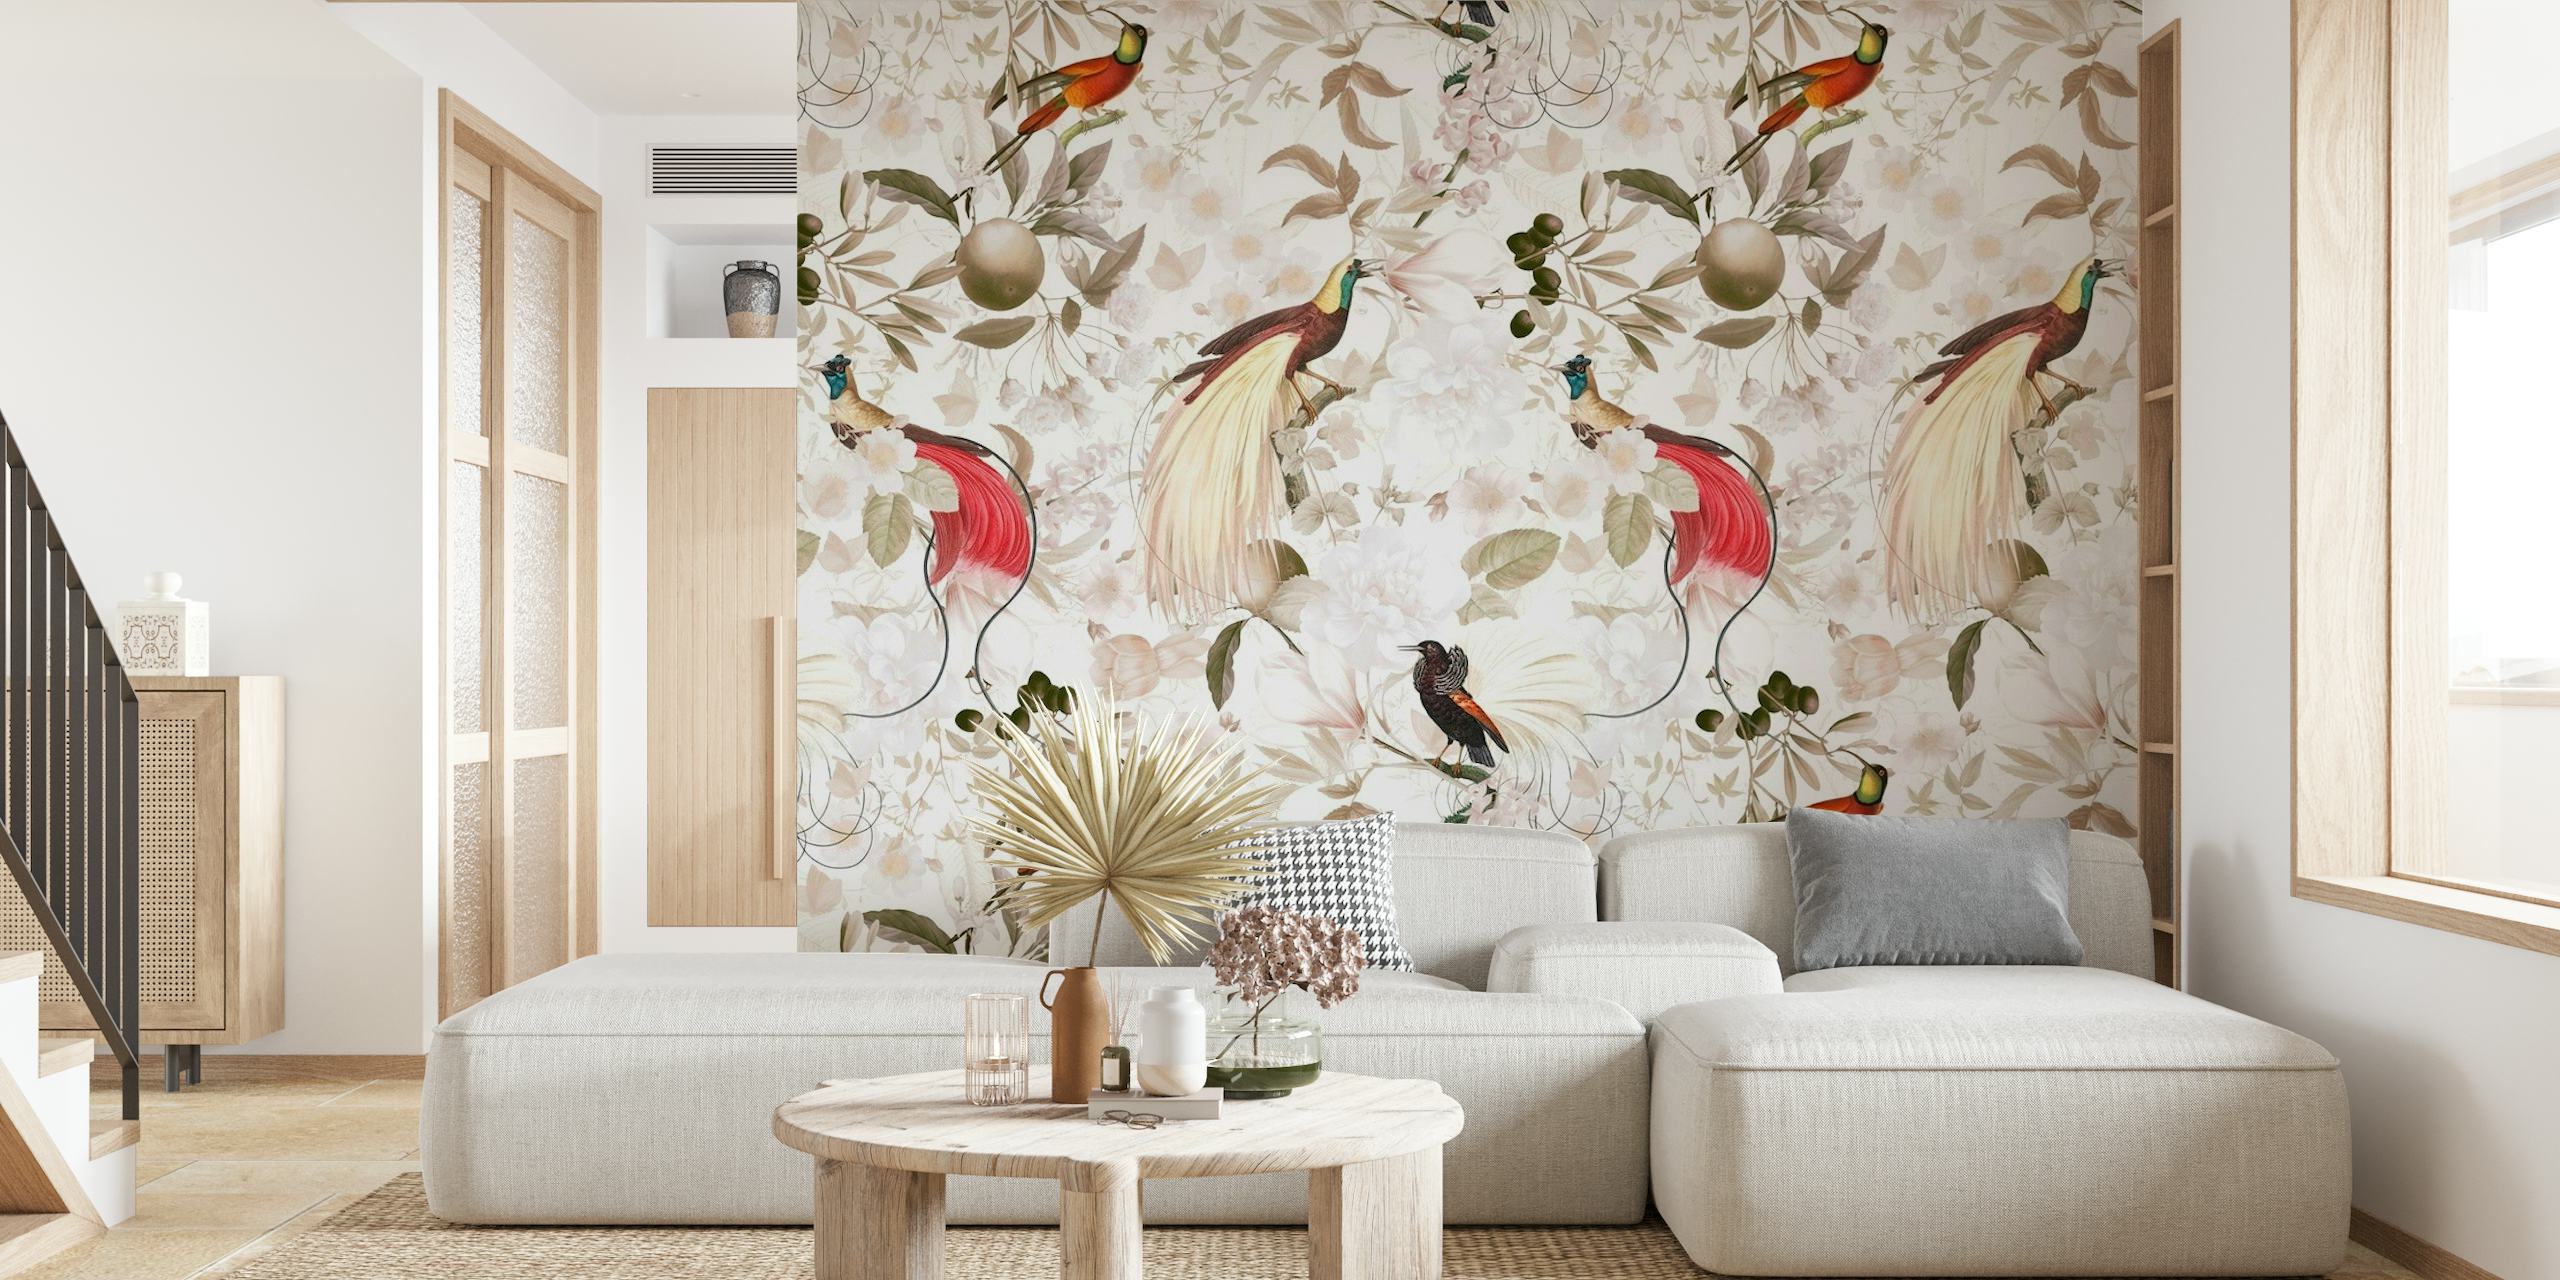 Zidni mural sa šarenim rajskim pticama u vintage okruženju džungle